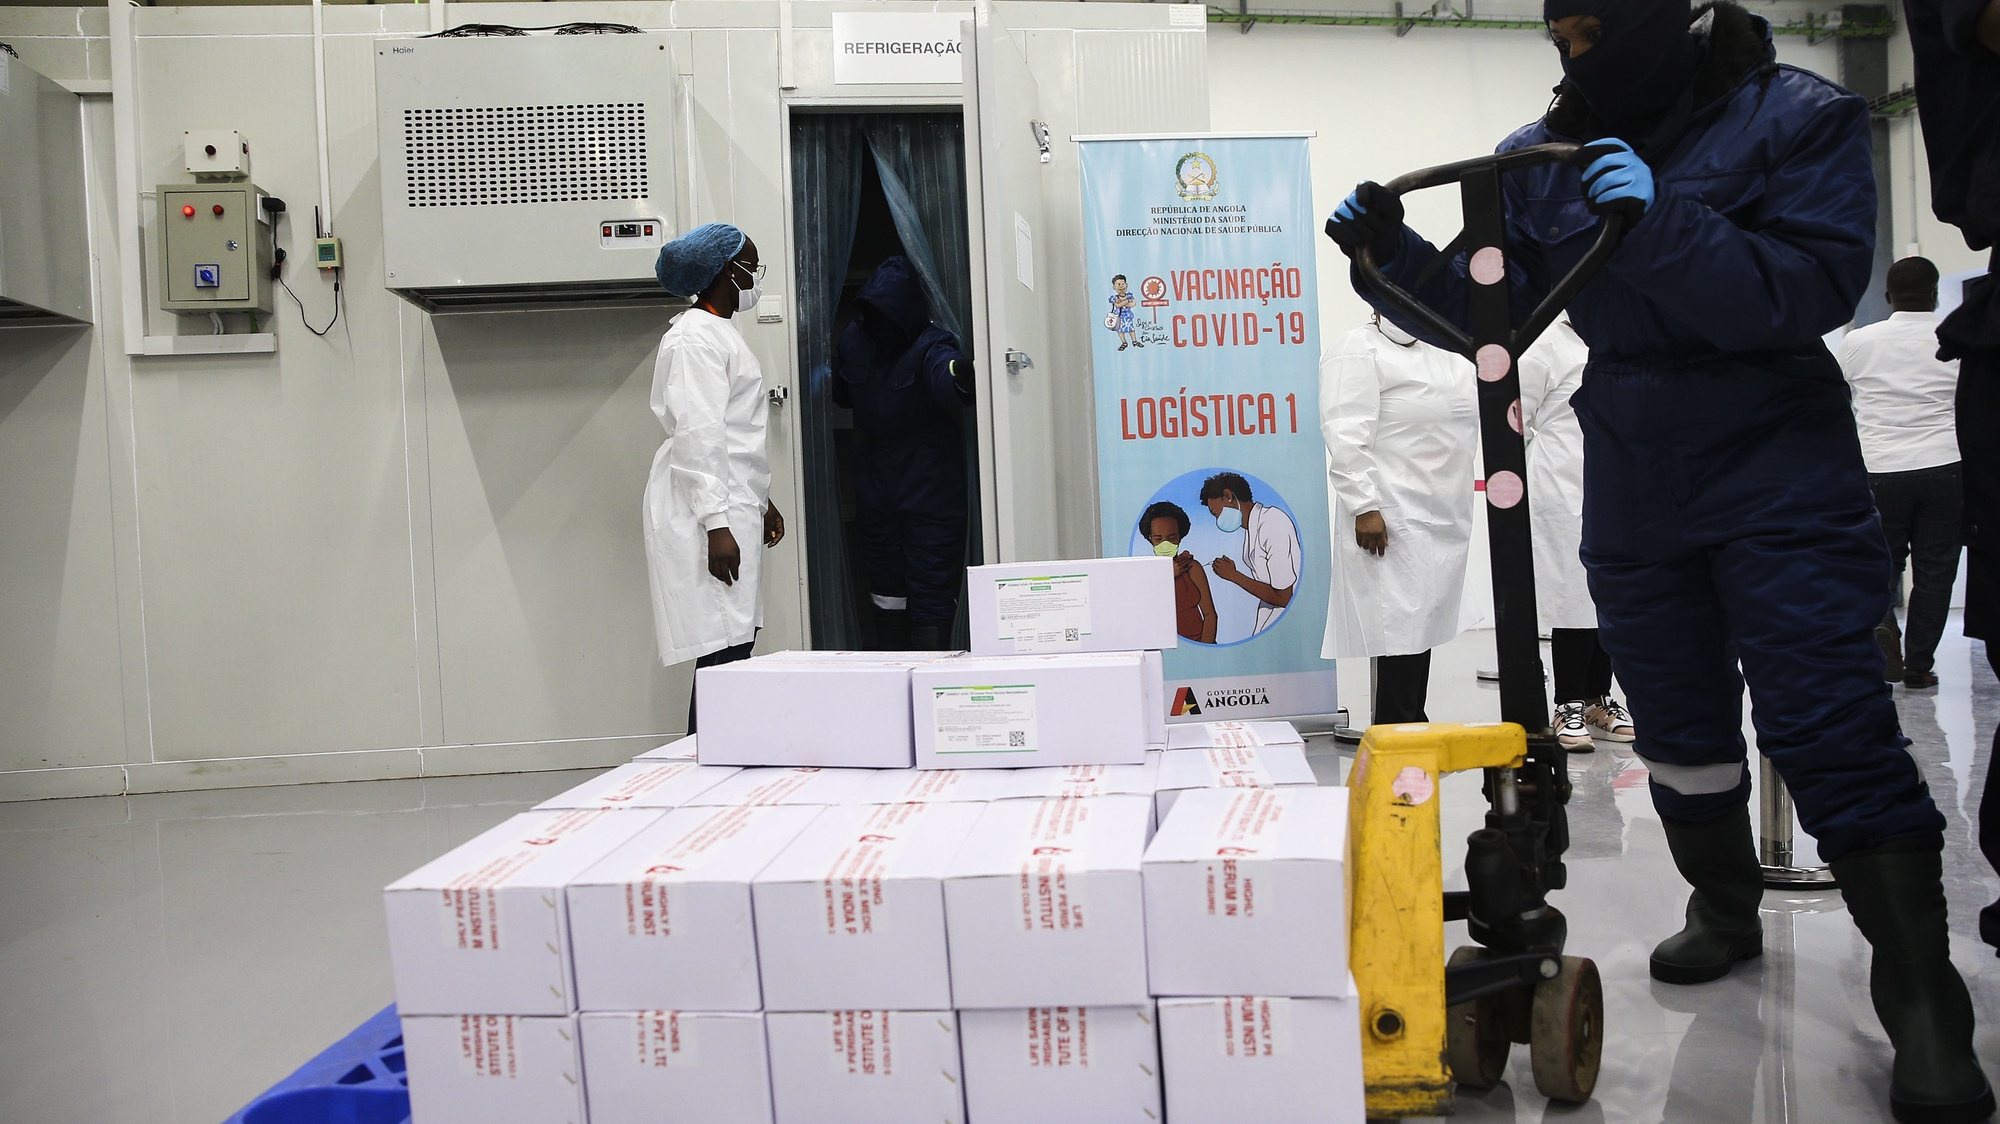 Frigorífico do depósito central de vacinas de Angola, no dia em que chegaram ao país as primeiras 624.000 doses de vacinas contra a covid-19, no aeroporto Internacional 4 de Fevereiro, que contou com a presença da ministra da Saúde, Silvia Lutucuta (ausente da foto), no âmbito da iniciativa Covax, Luanda, Angola, 2 de março de 2021. AMPE ROGÉRIO/LUSA